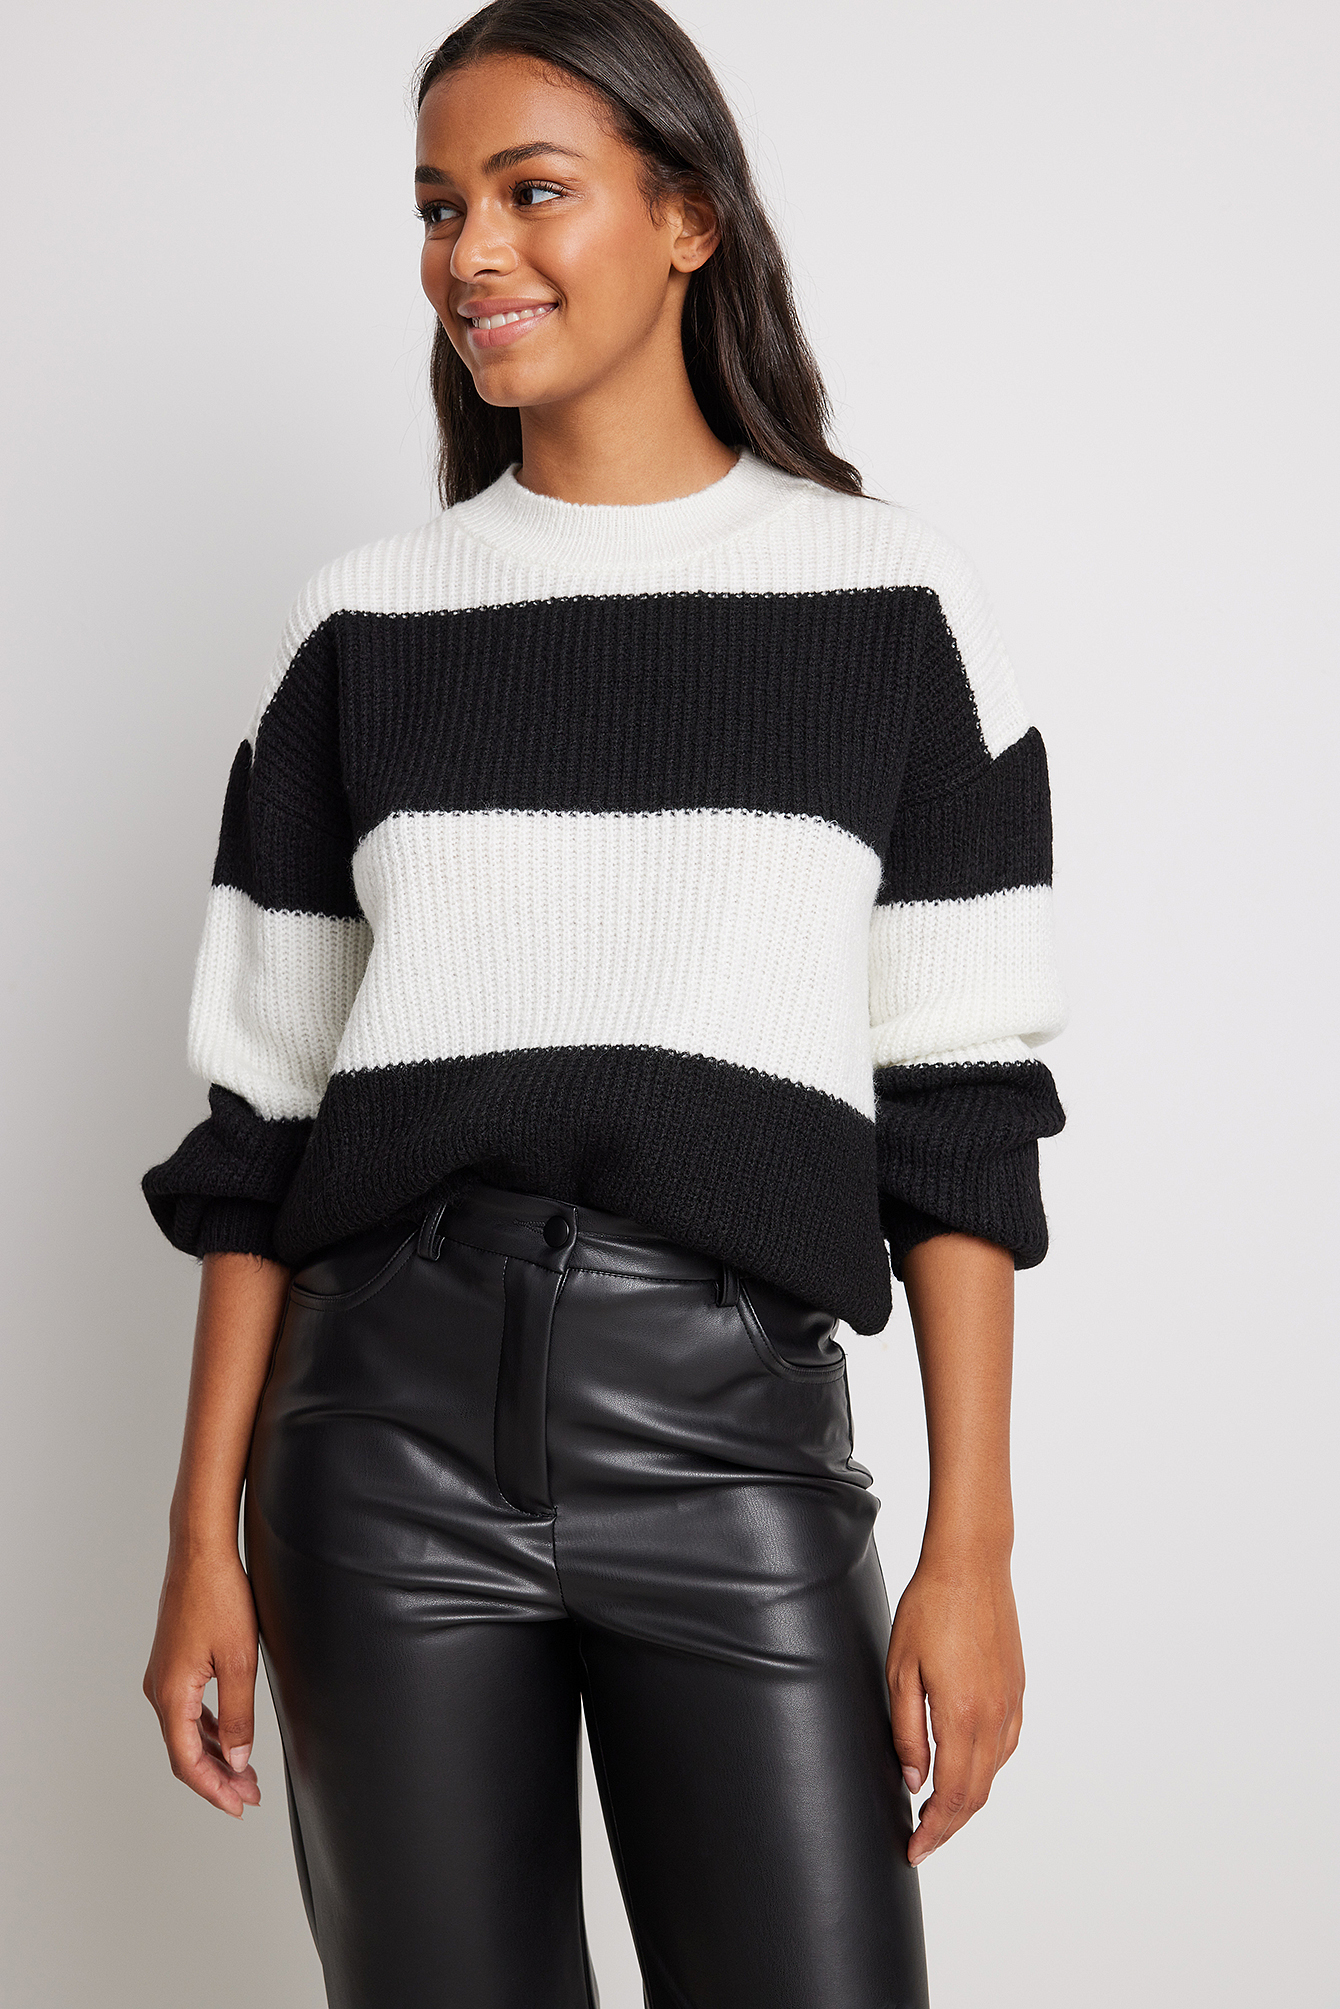 Ann Taylor Gebreide trui zwart-room volledige print casual uitstraling Mode Sweaters Gebreide truien 